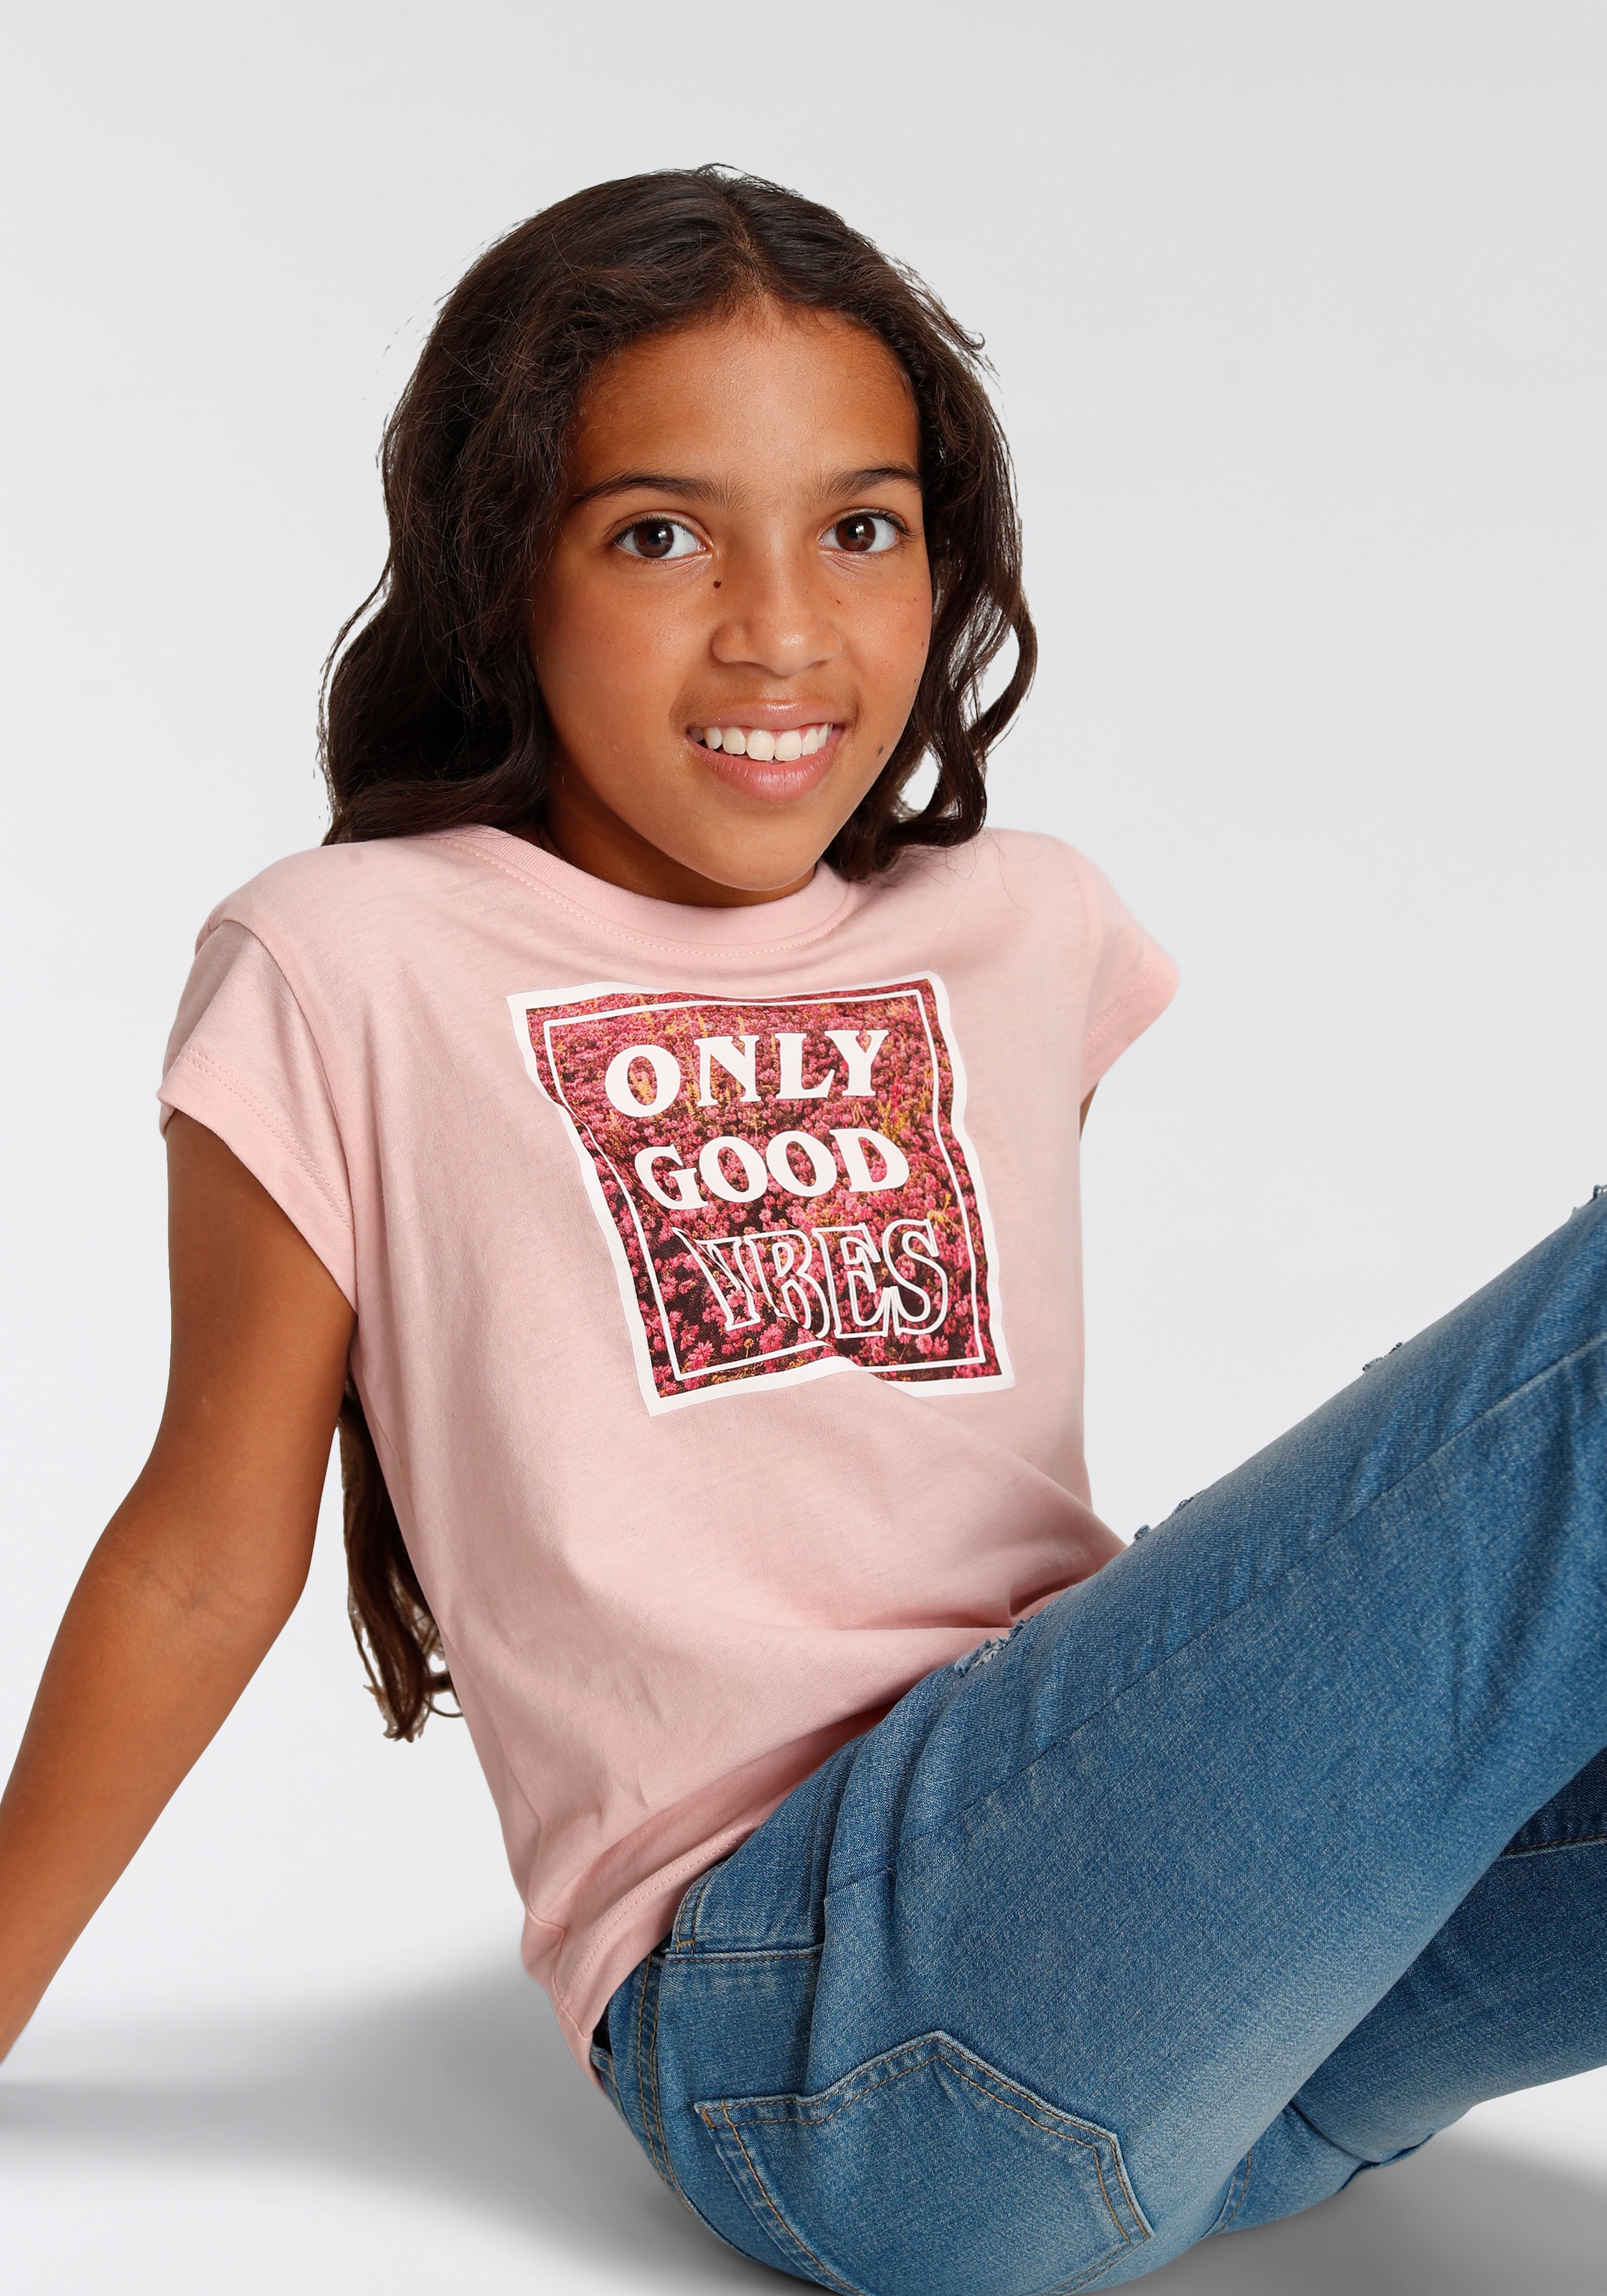 KIDSWORLD T-Shirt »ONLY GOOD VIBES«, kurze modische Form bei ♕